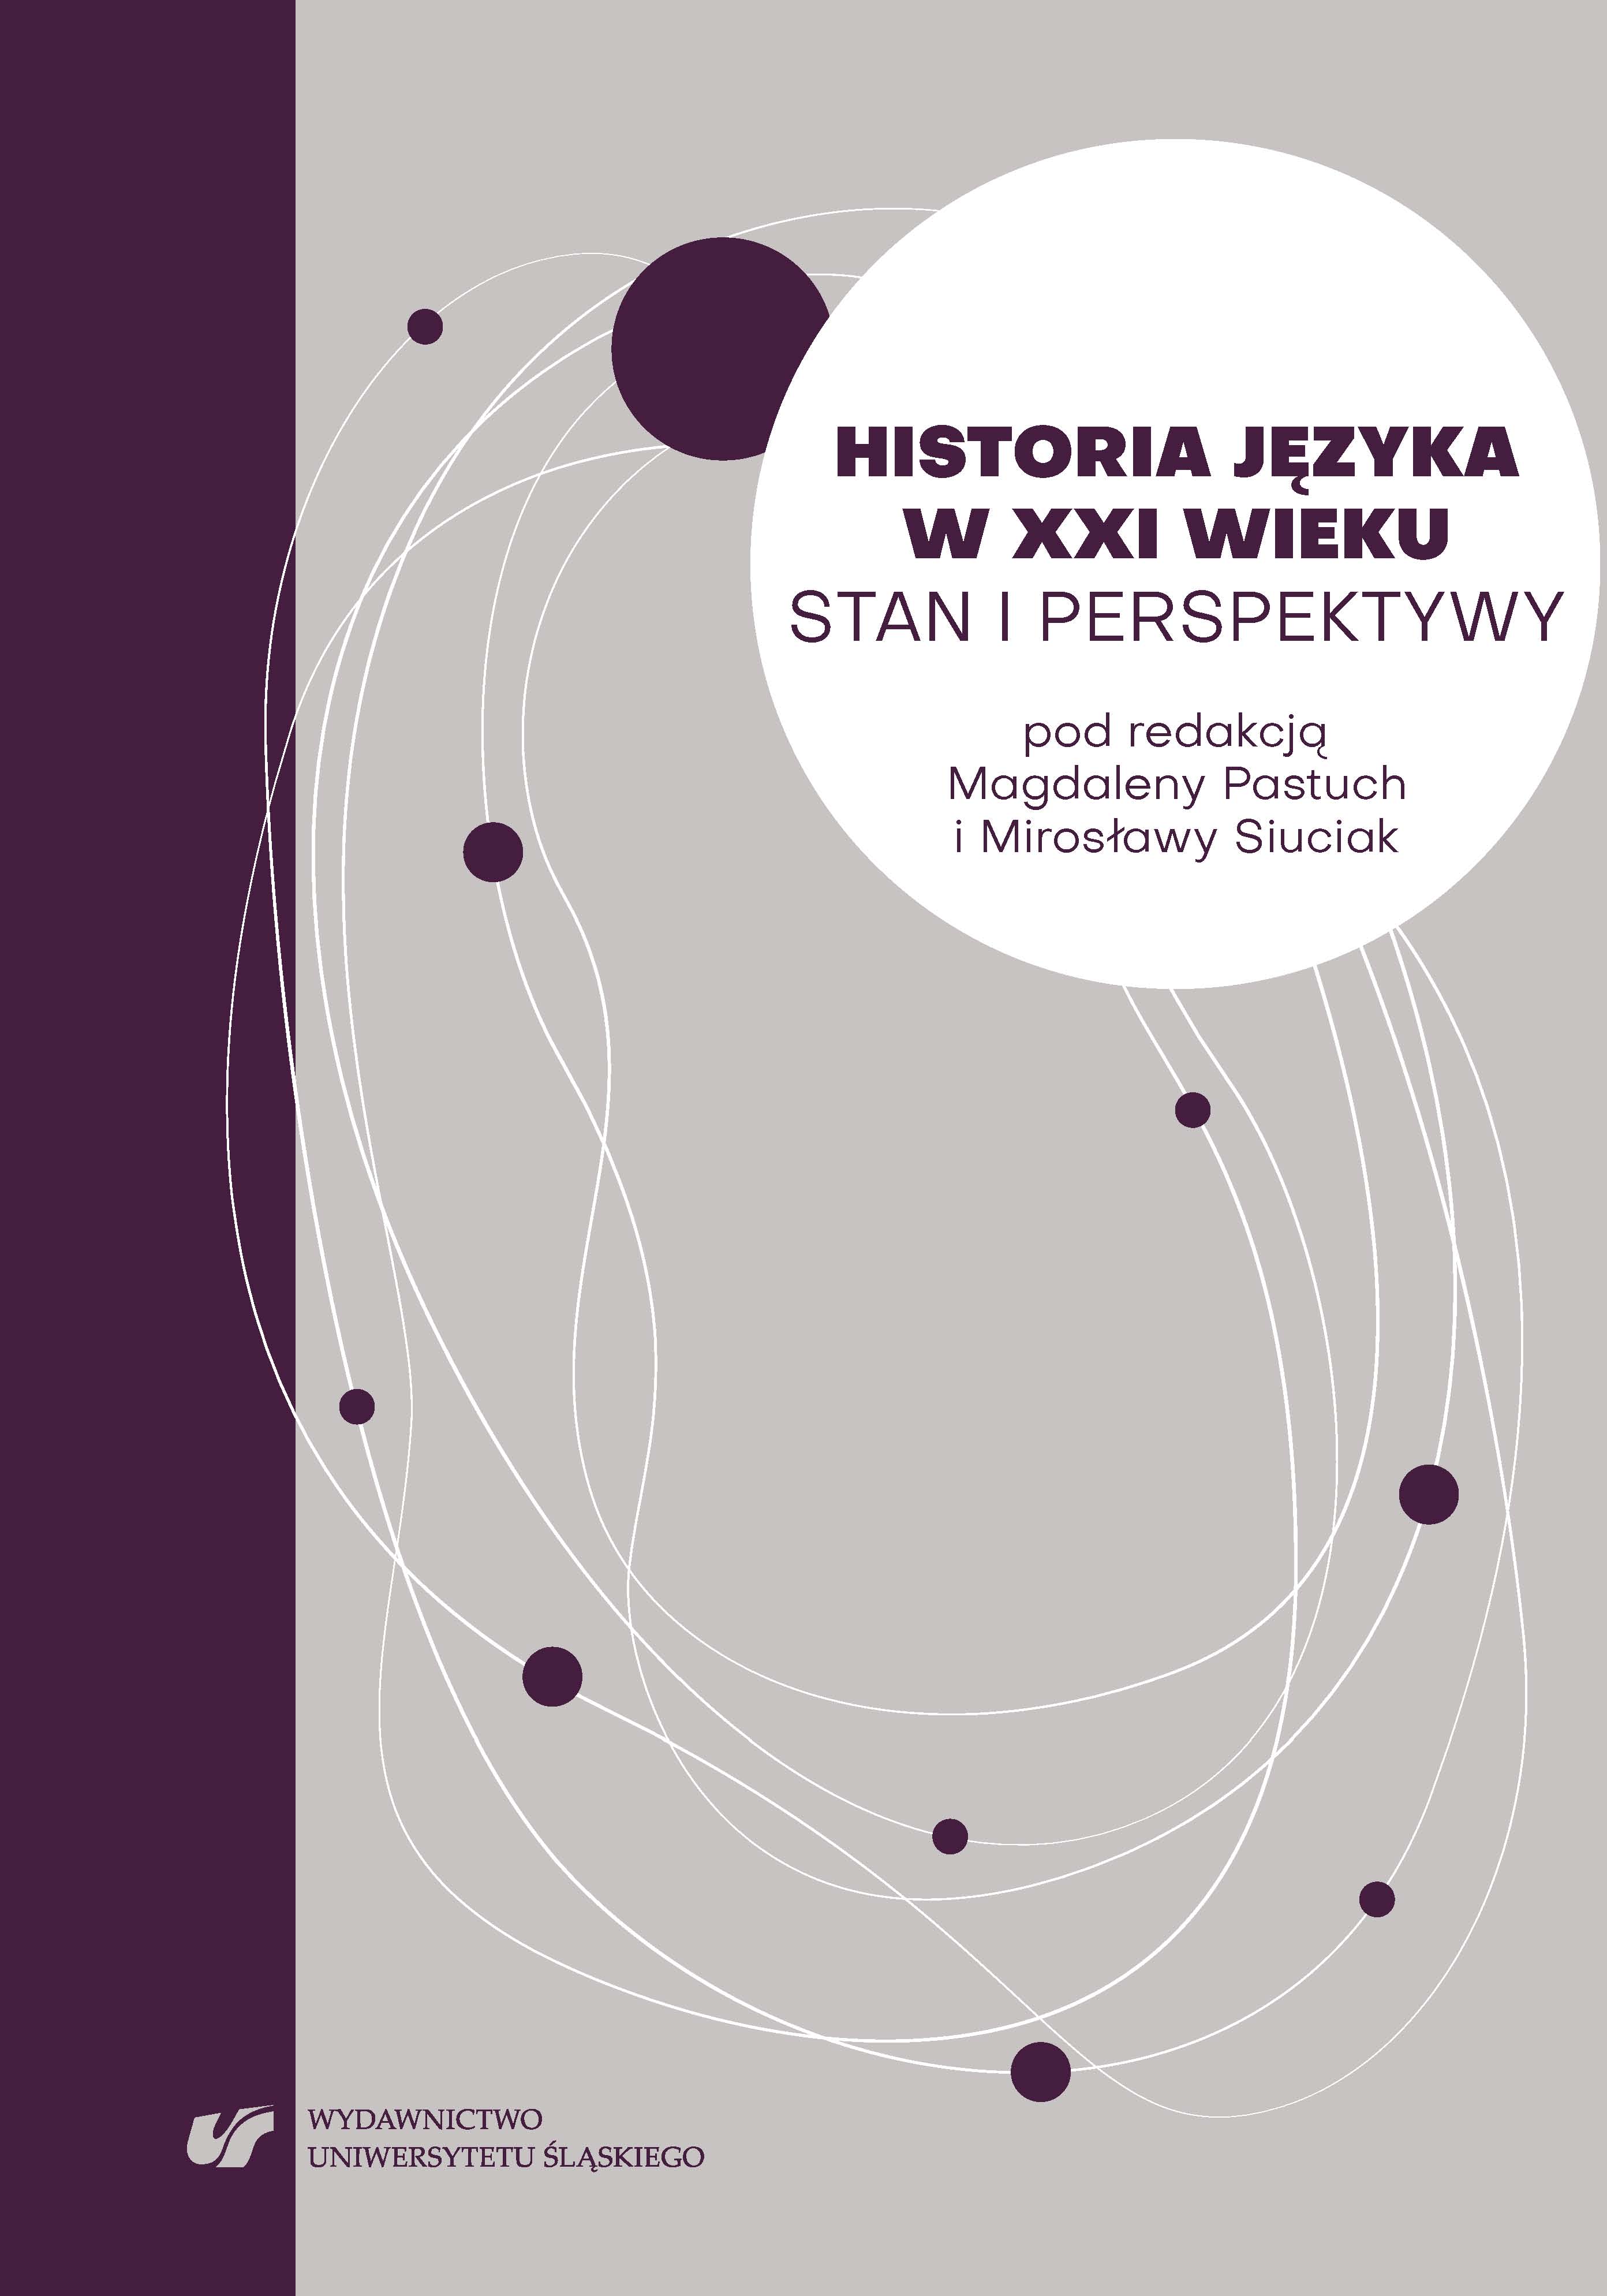 Historia języka polskiego – subdyscyplina polimetodologiczna